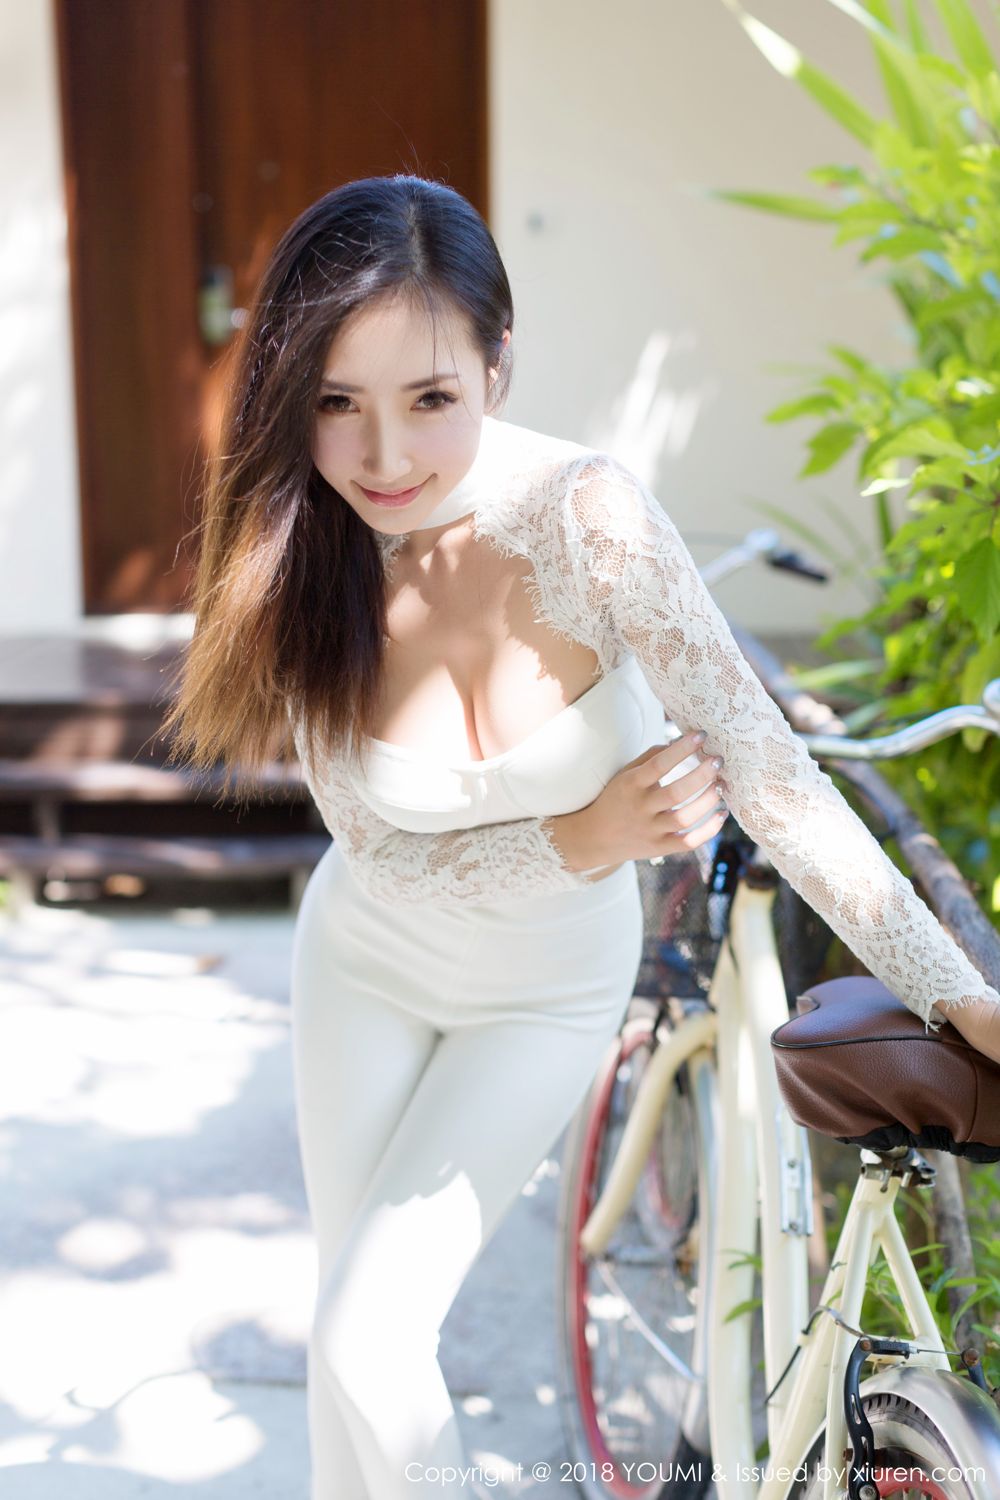 性感女神Yumi尤美一身白衣凸显好身材